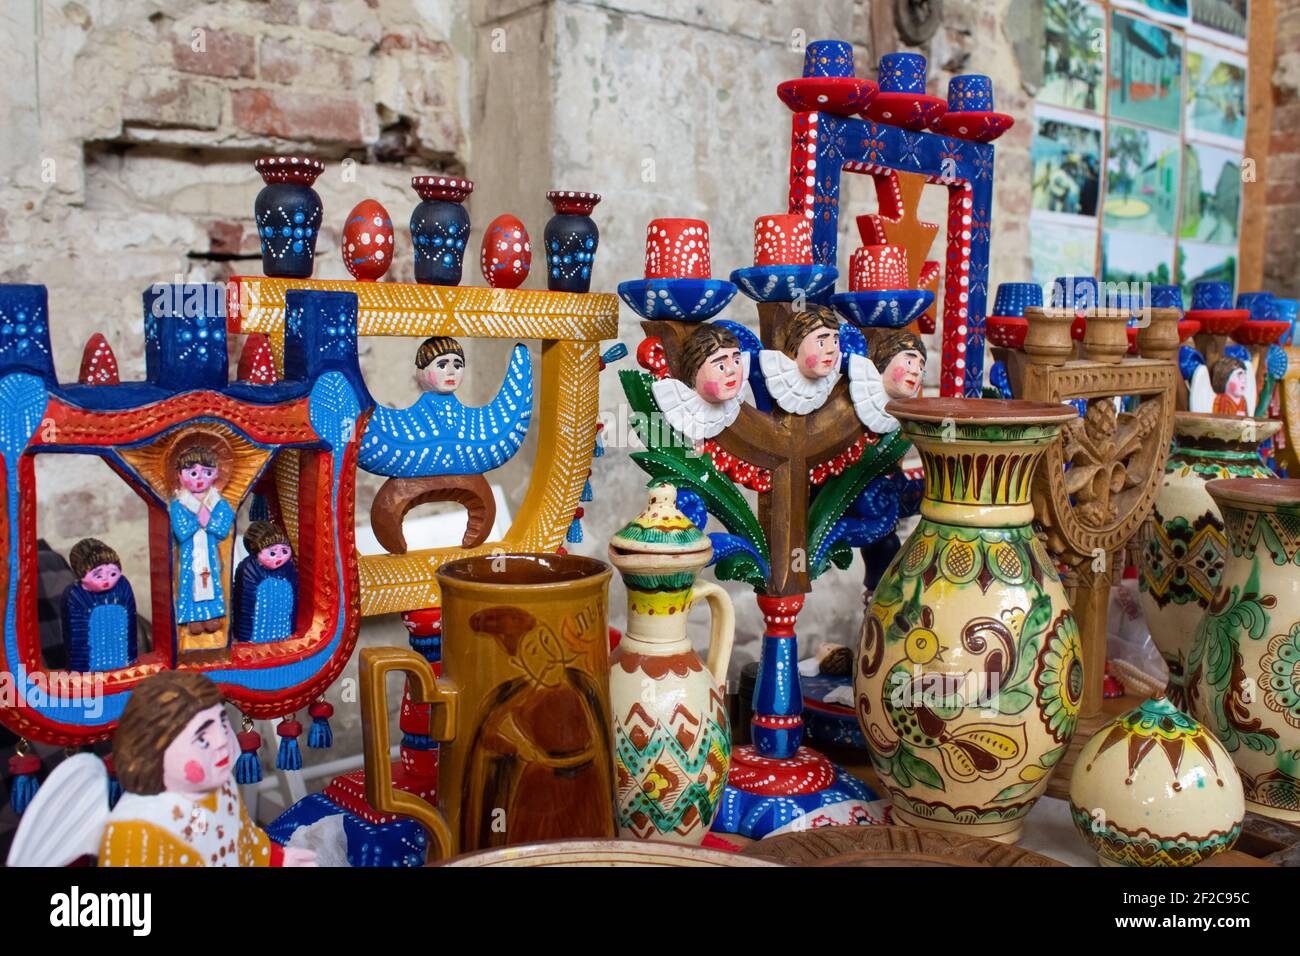 Antiquariato sul mercato delle pulci - candele di legno, piatti di ceramica d'epoca, vasi e altre cose d'epoca. Cimeli da collezione e vendita garage Foto Stock